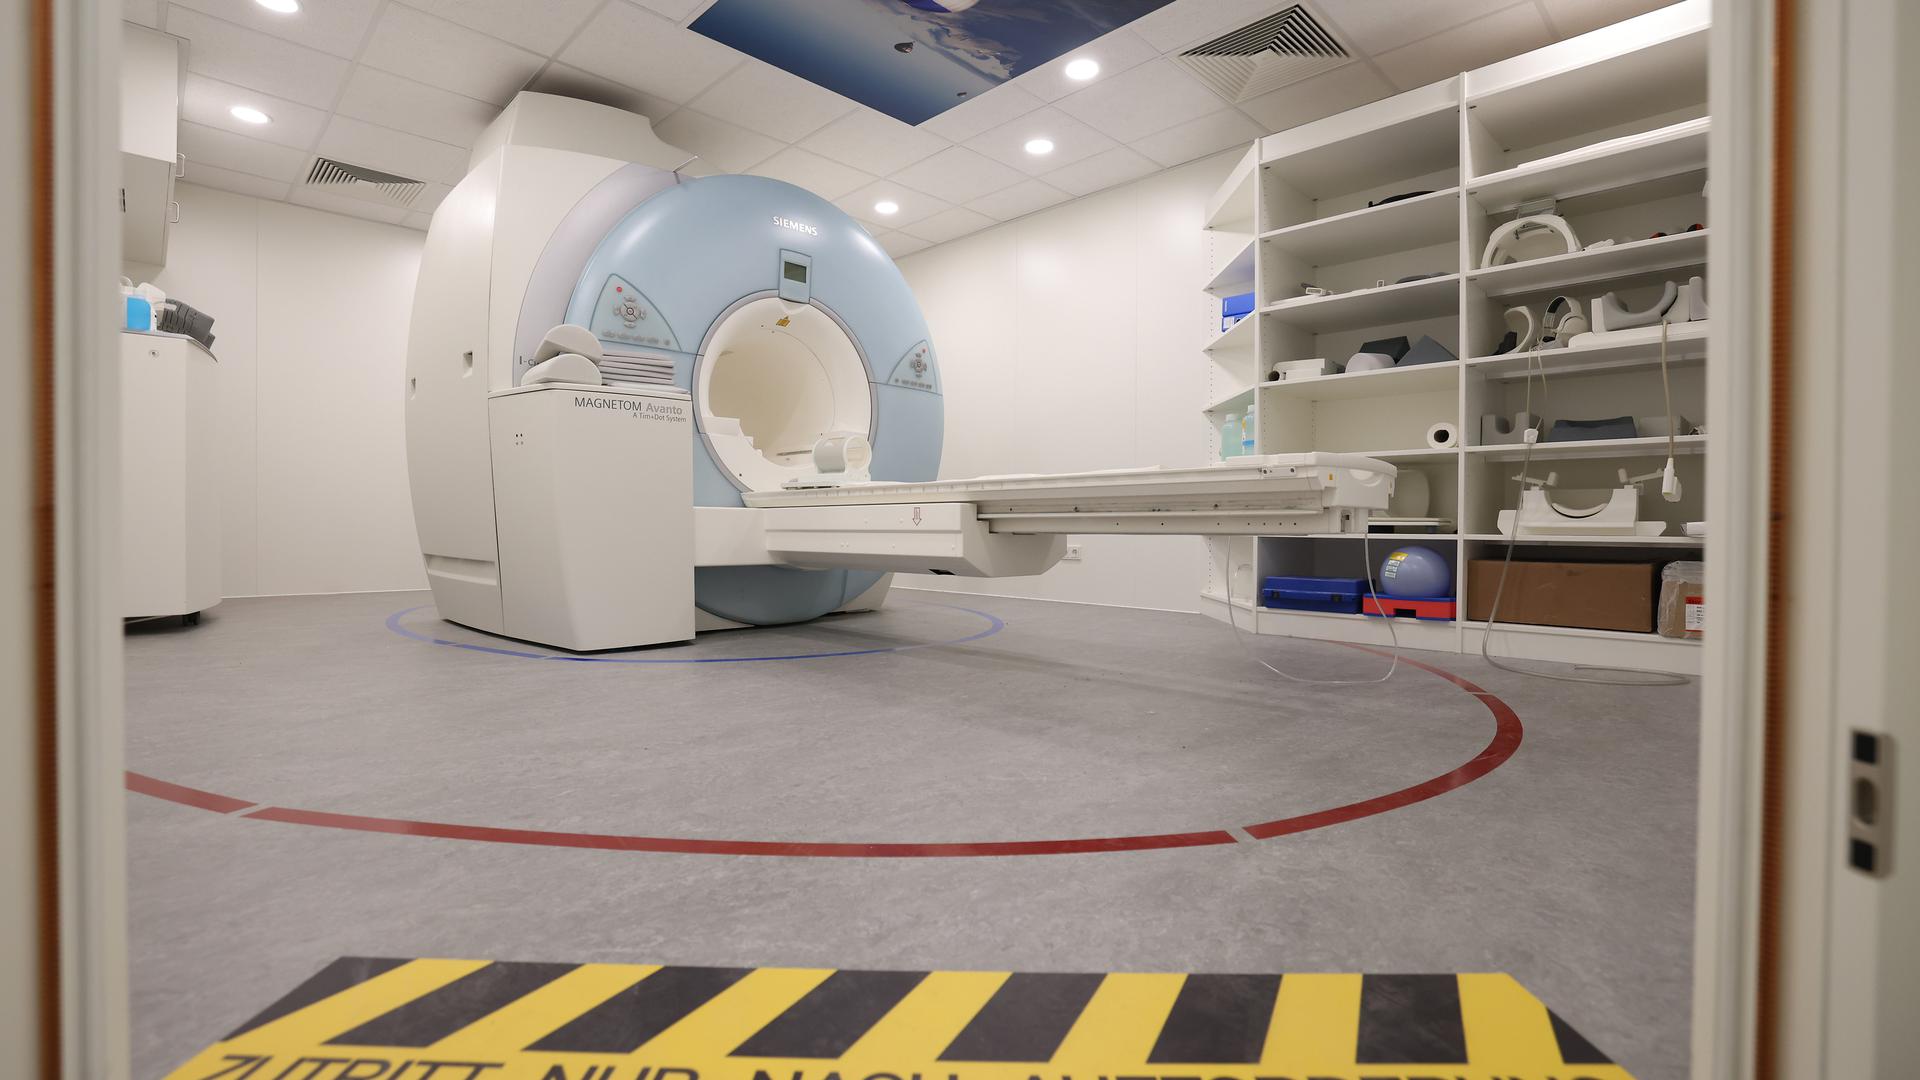 Au centre du débat, le service de radiologie avec IRM au Potaschbierg. Le patient a tout à gagner dans un système de santé qui offre de façon adéquate une médecine de proximité extrahospitalière, soulignent les auteurs.  